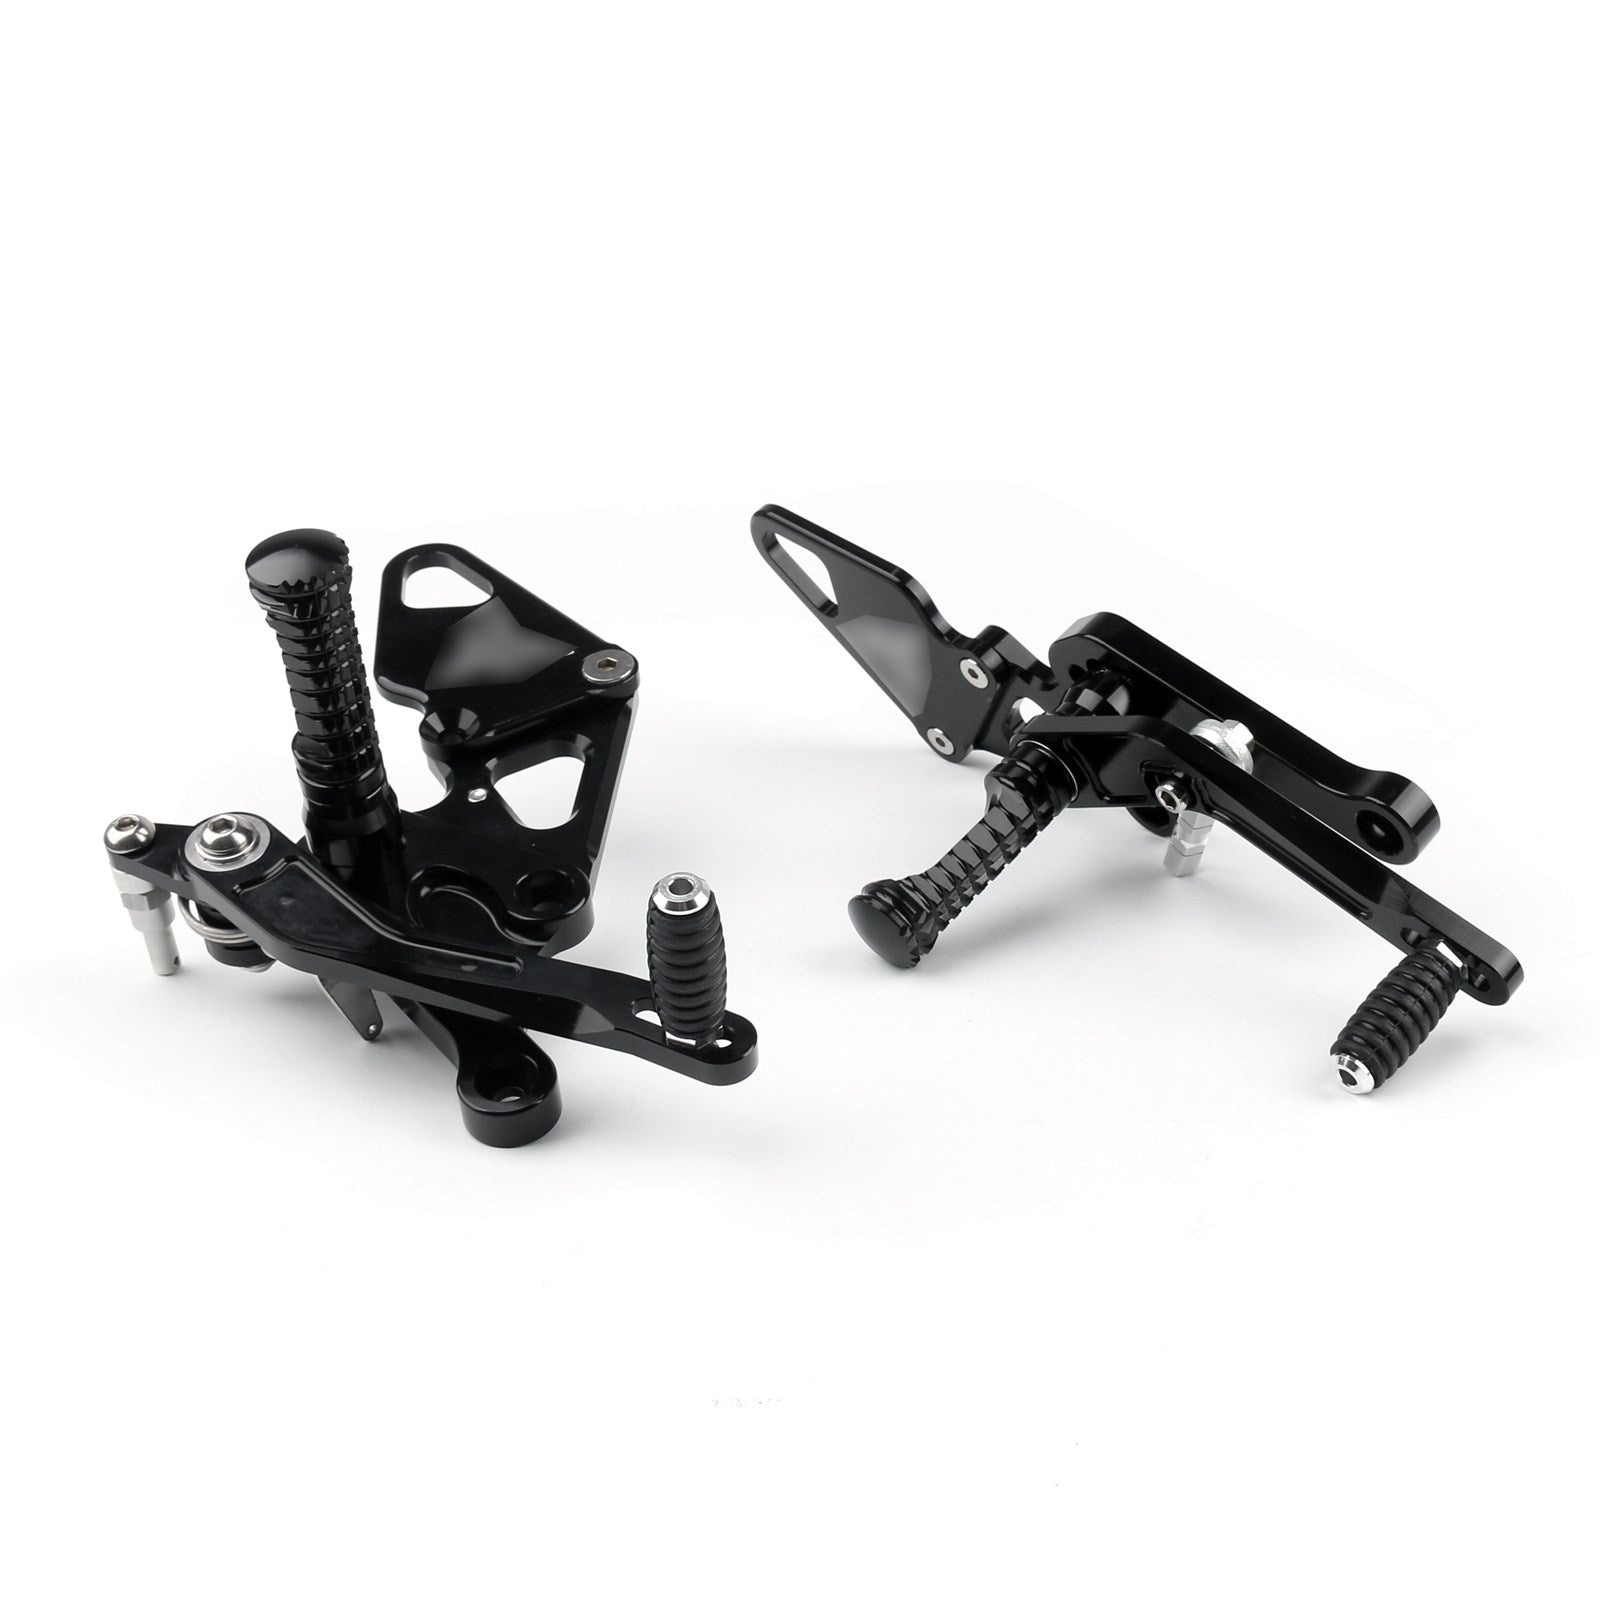 Adjustable Rearsets Foot Rest Peg Rear Set For Yamaha MT-07 FZ-07 2013-16 Black